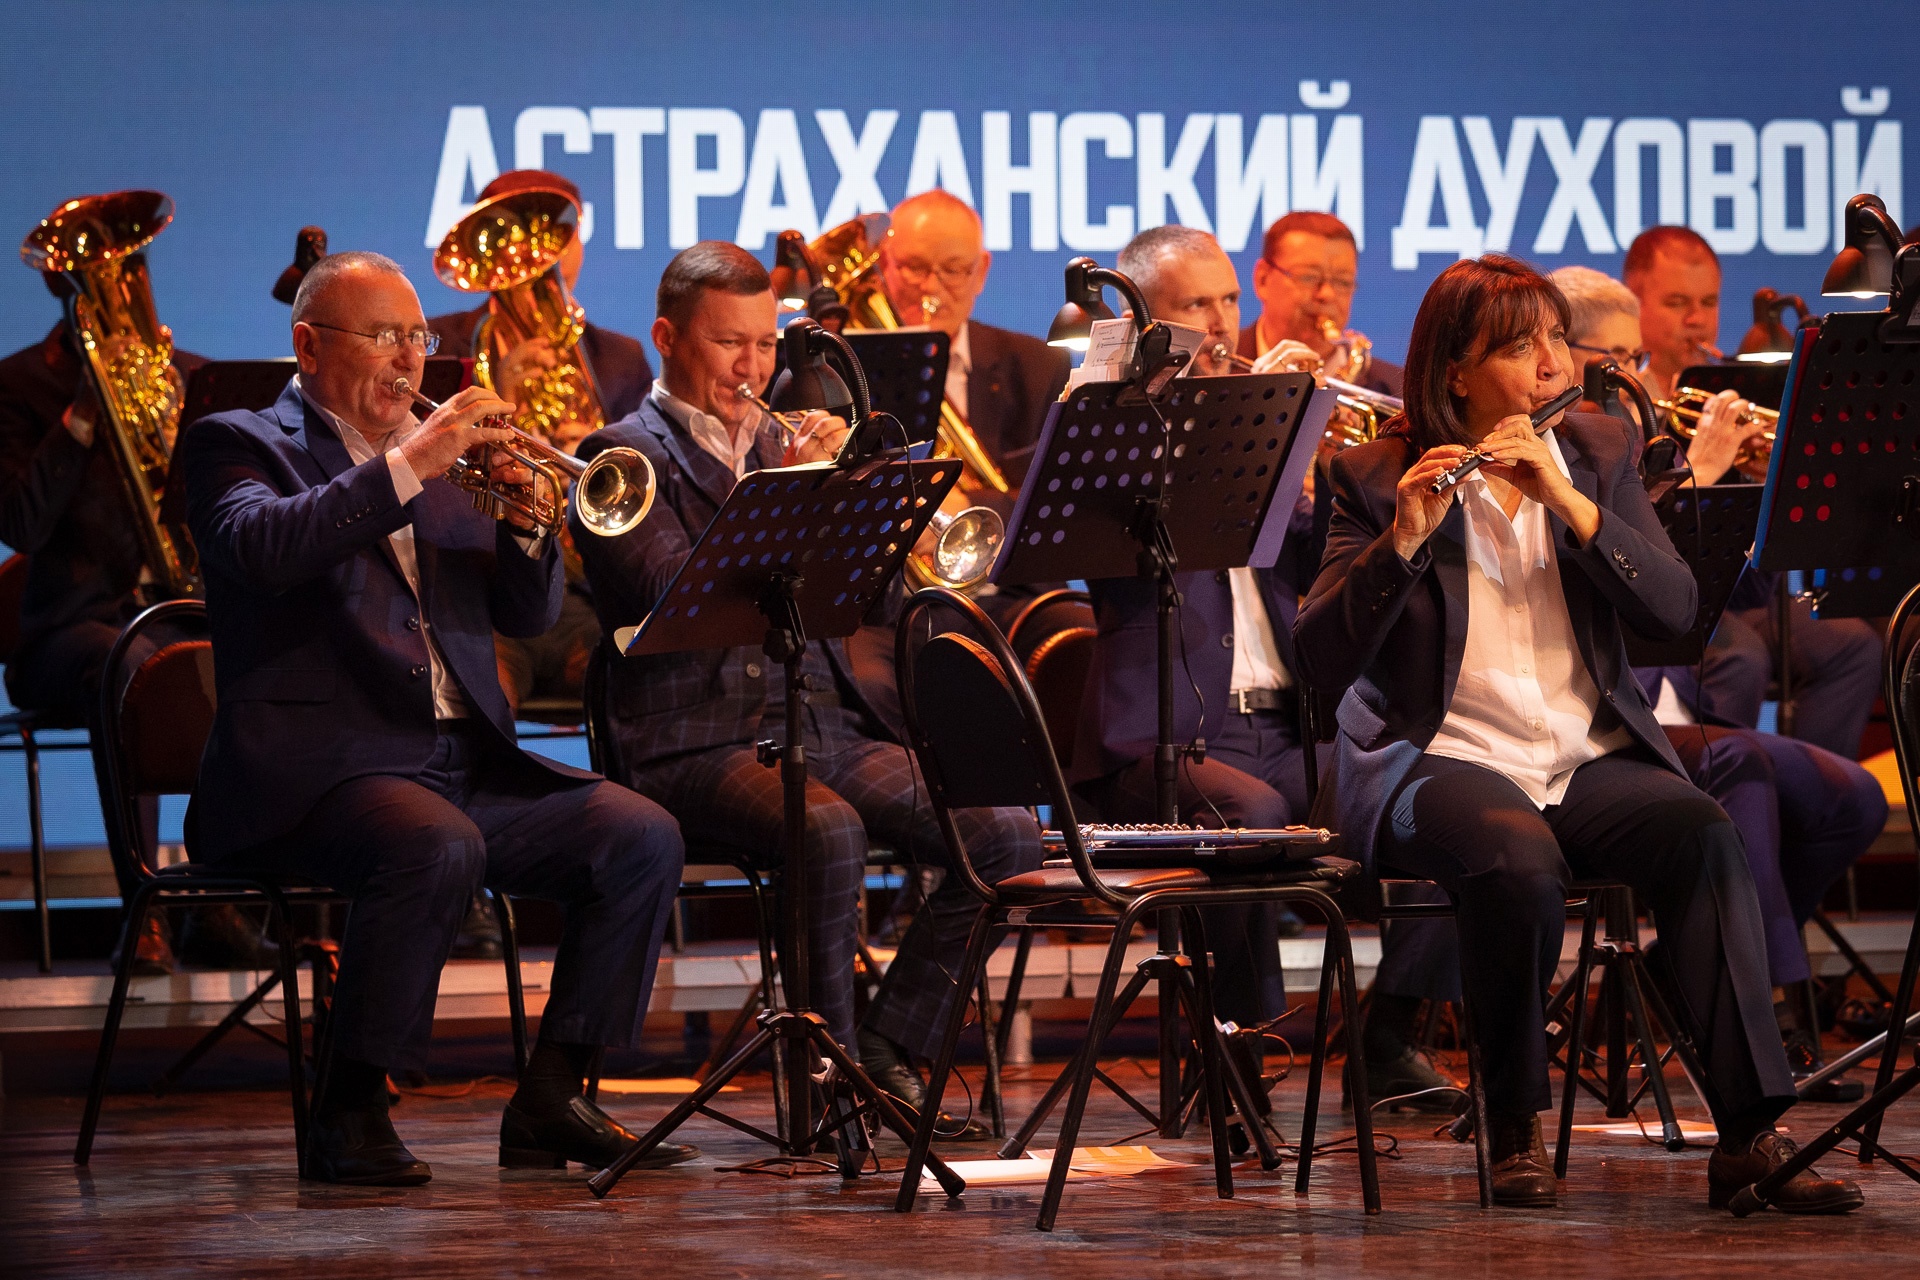 Астраханский духовой оркестр выступит в кремле с новогодней программой